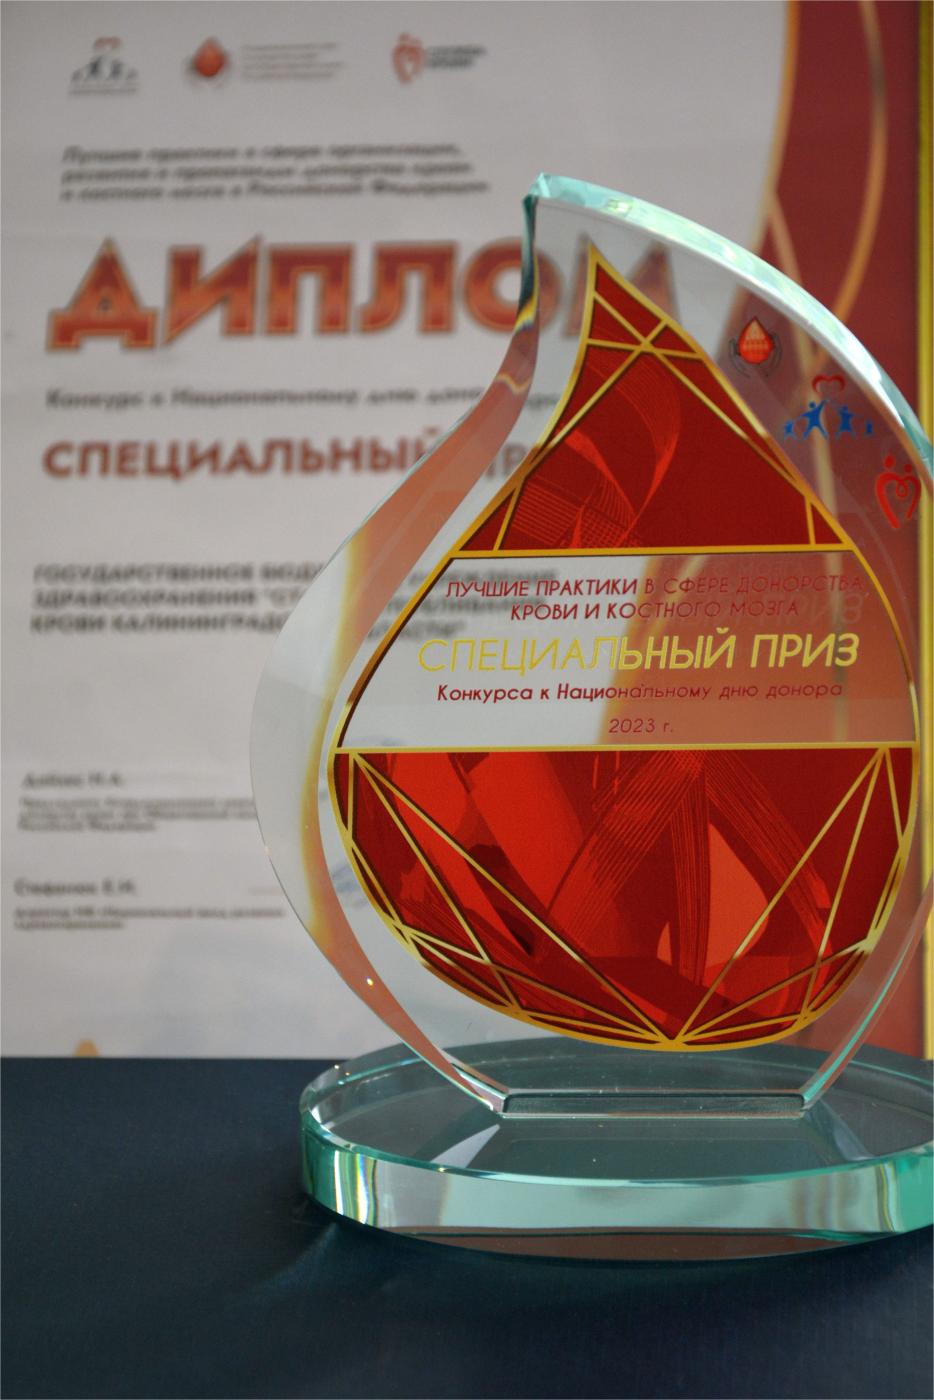 Станции переливания крови вручили специальный приз и Диплом Конкурса лучших практик в сфере организации, развития и пропаганды донорства крови и костного мозга в Российской Федерации